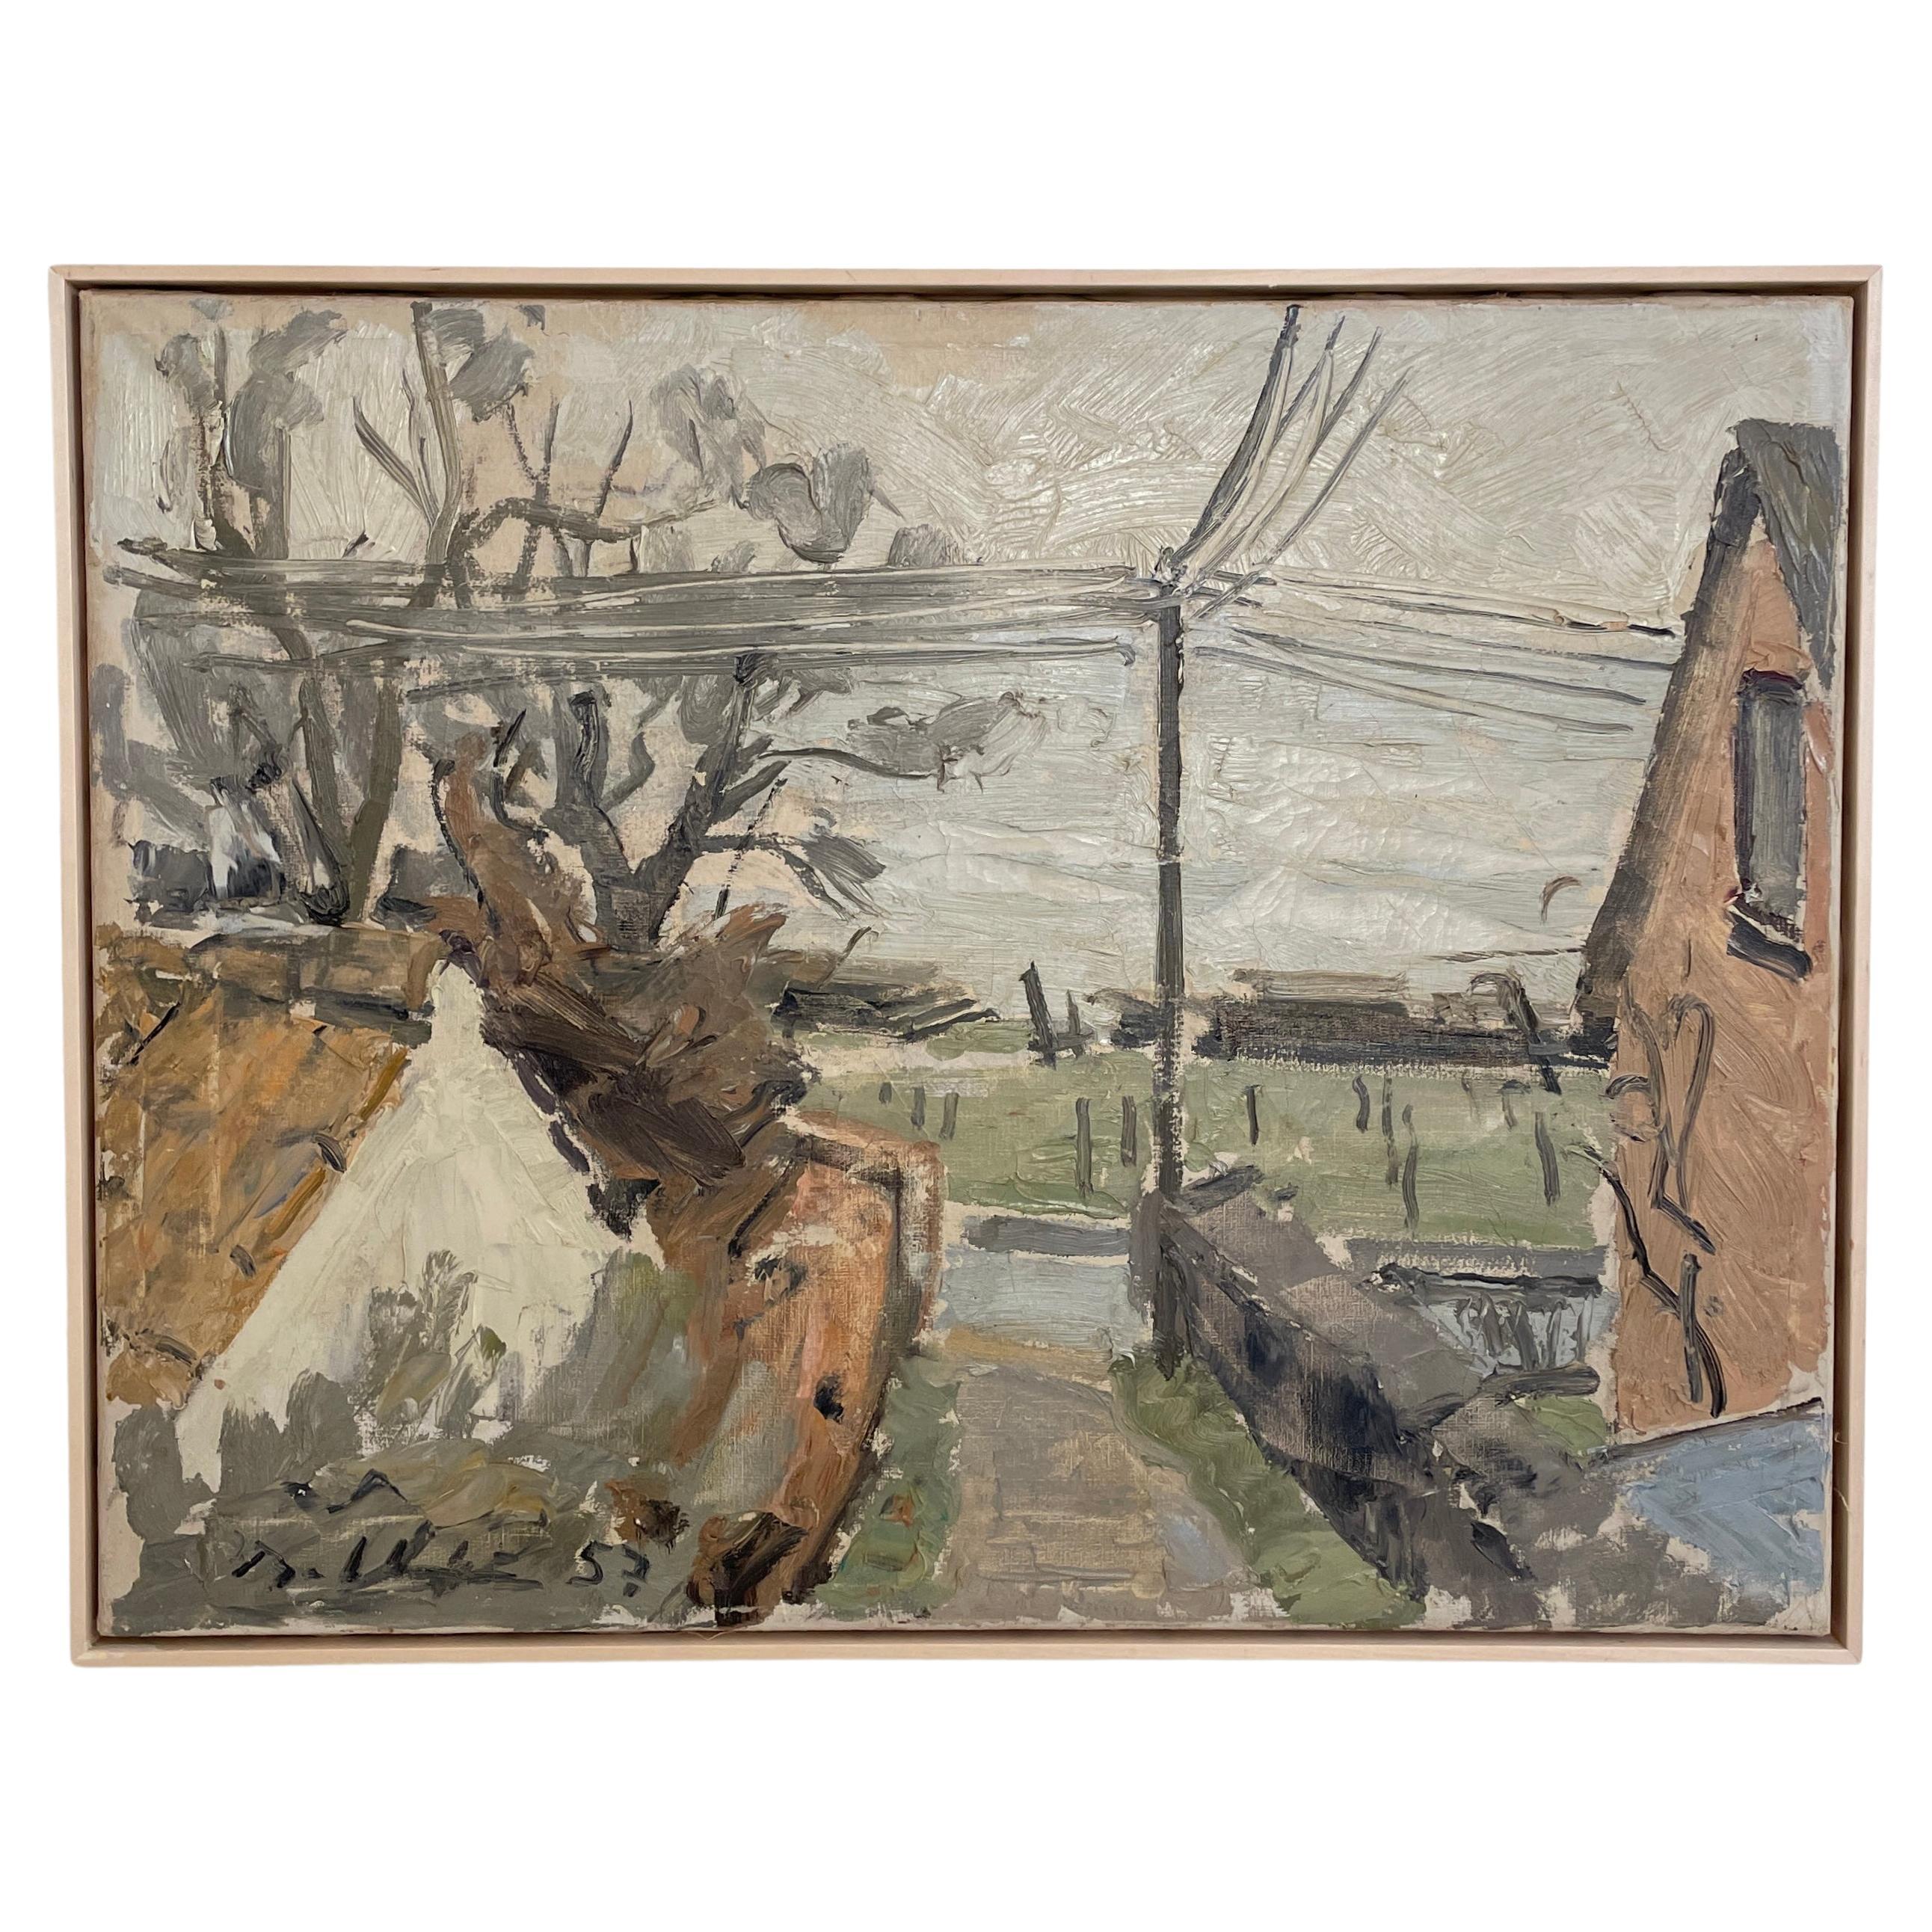 Peinture de paysage scandinave impressionniste à l'huile sur toile, vers 1952